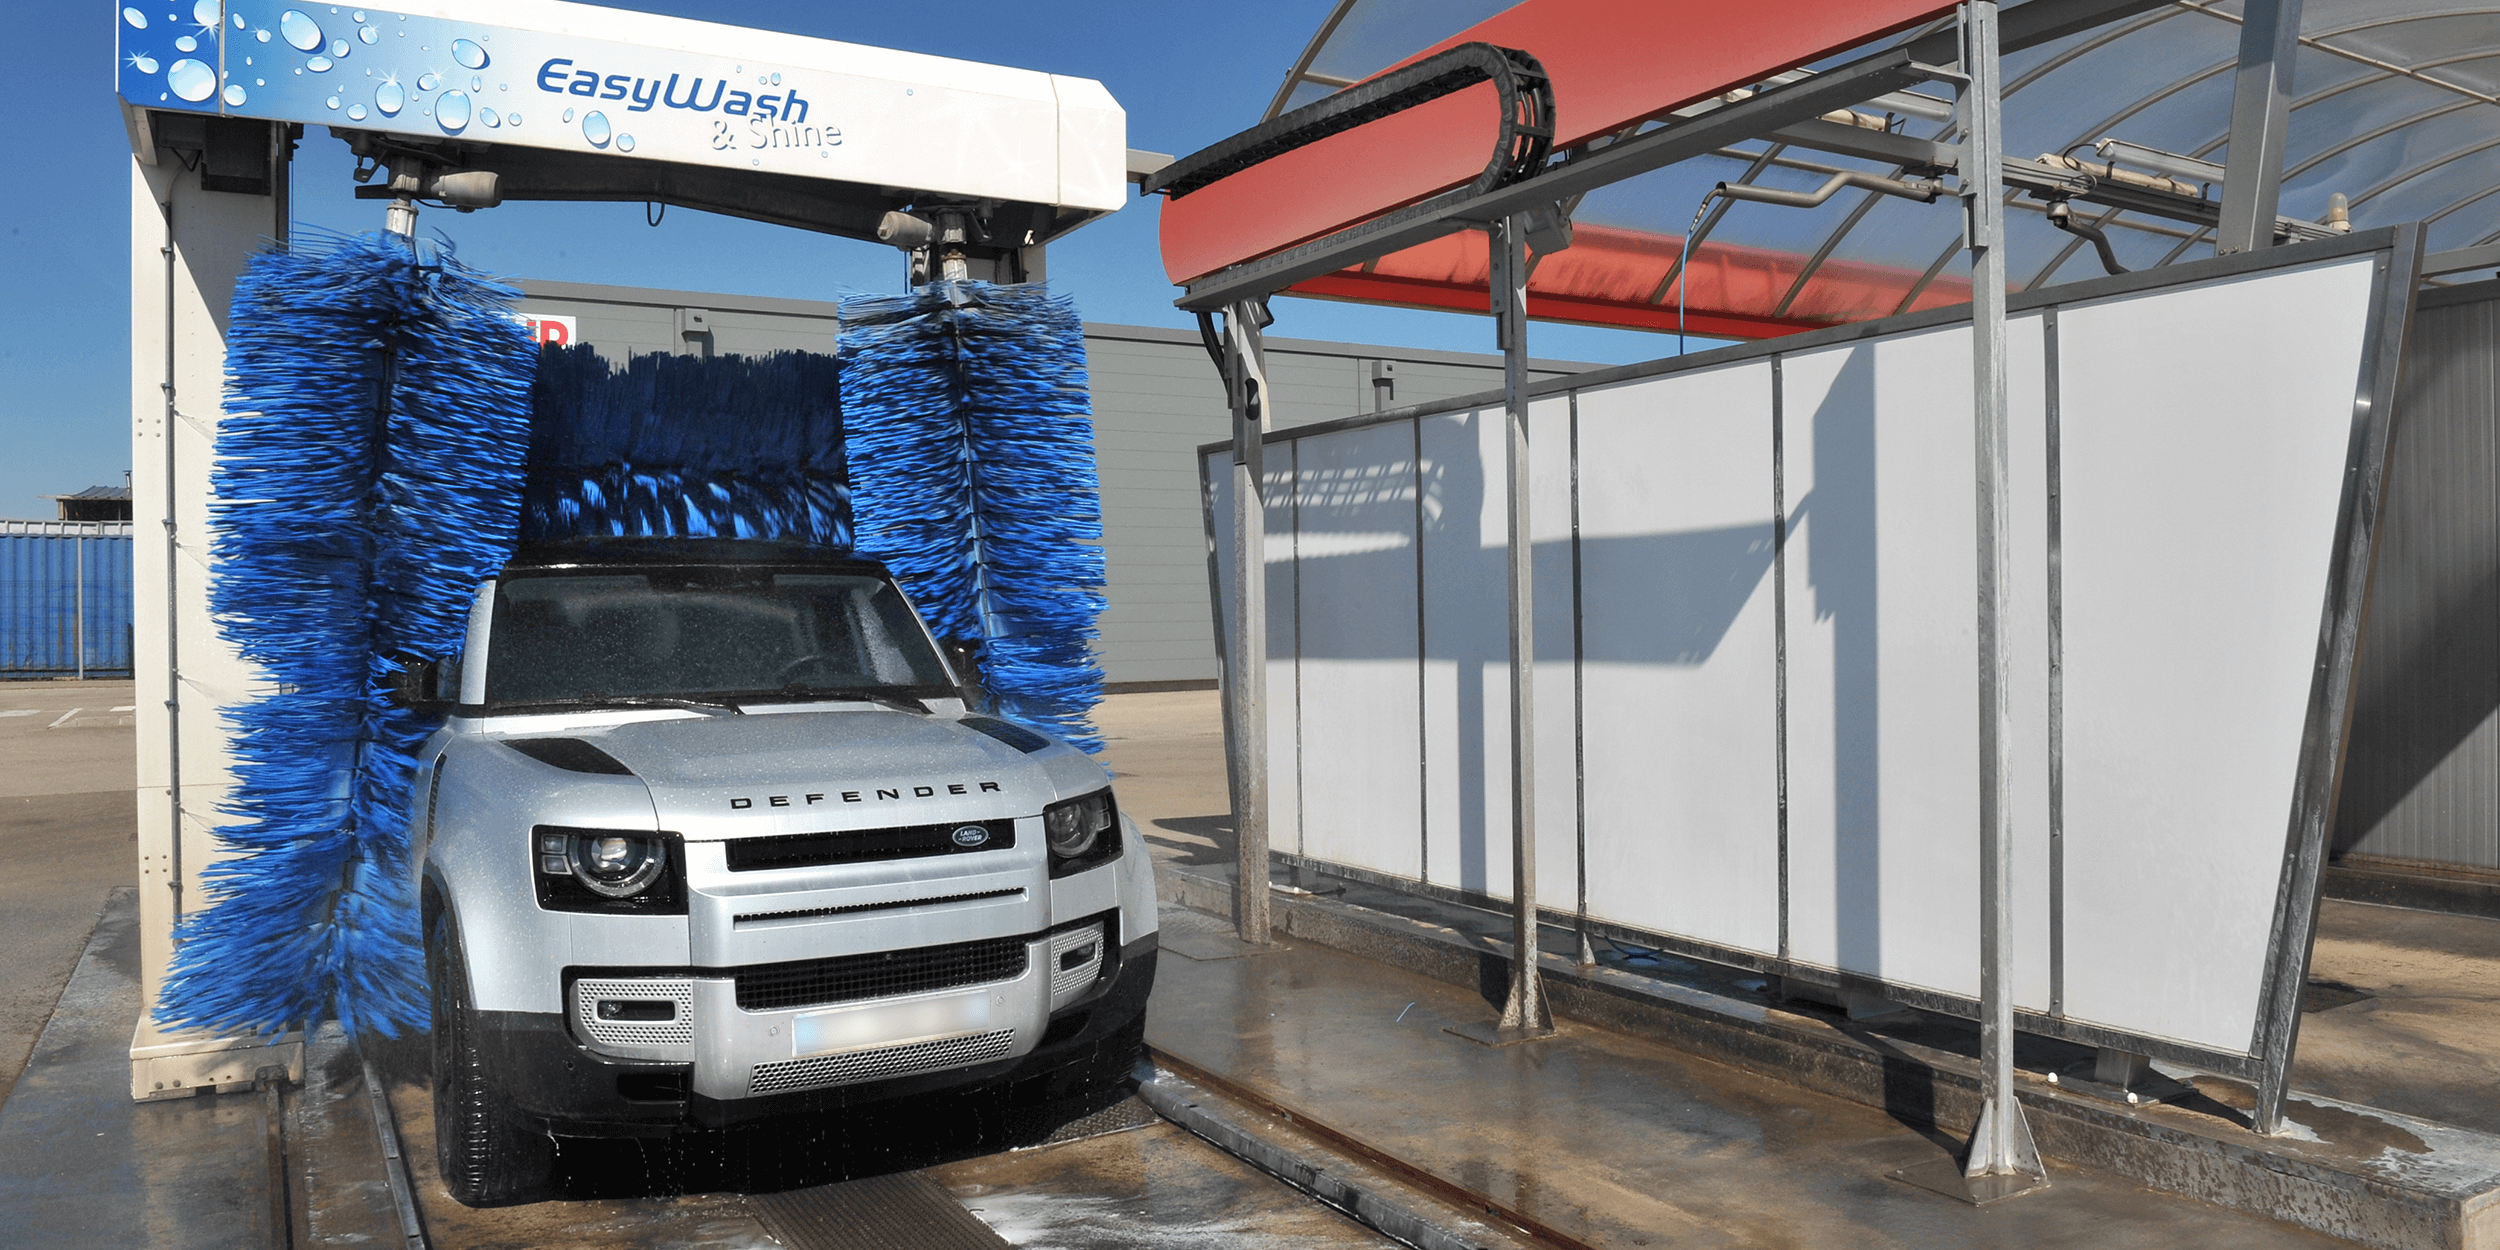 Portique lavage automatique automobile station hydrowash brosses mousse antirayures hydroflash chaumont route de neuilly